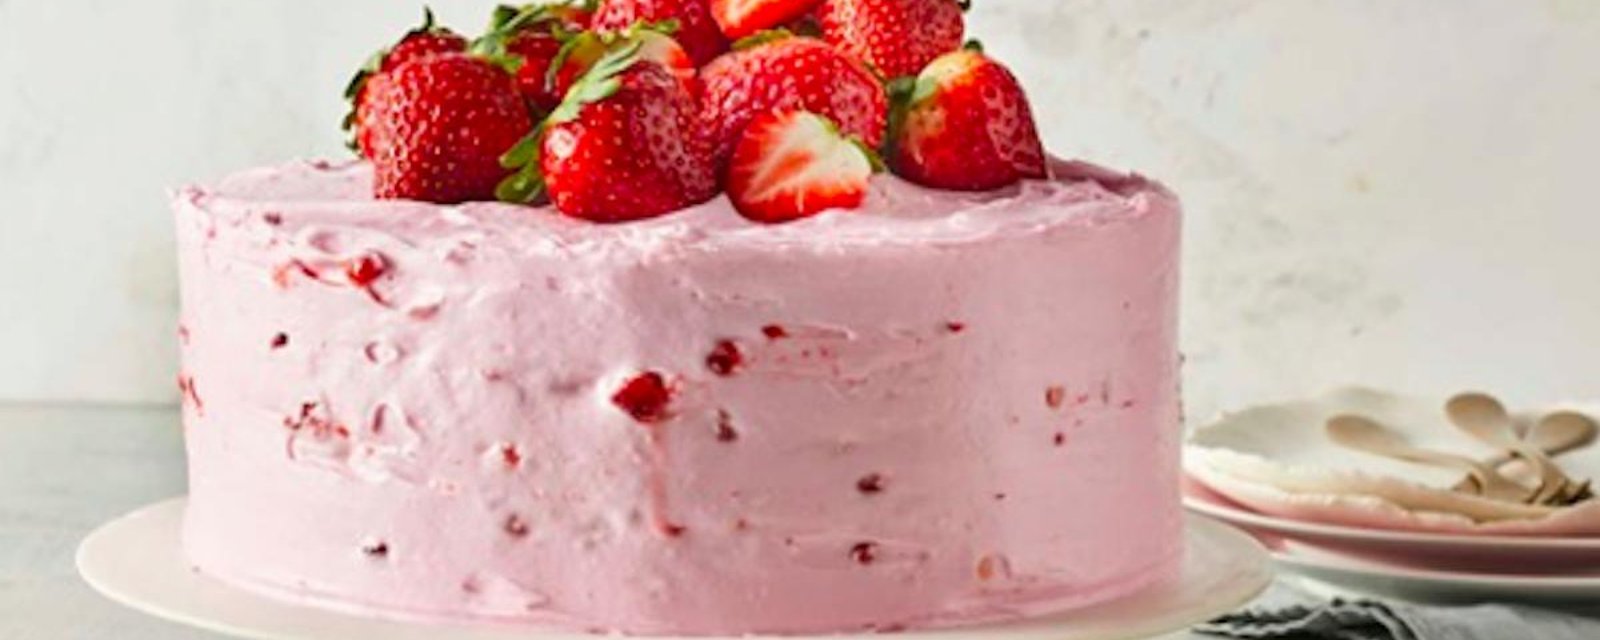 Sublime gâteau aux fraises et à la limonade